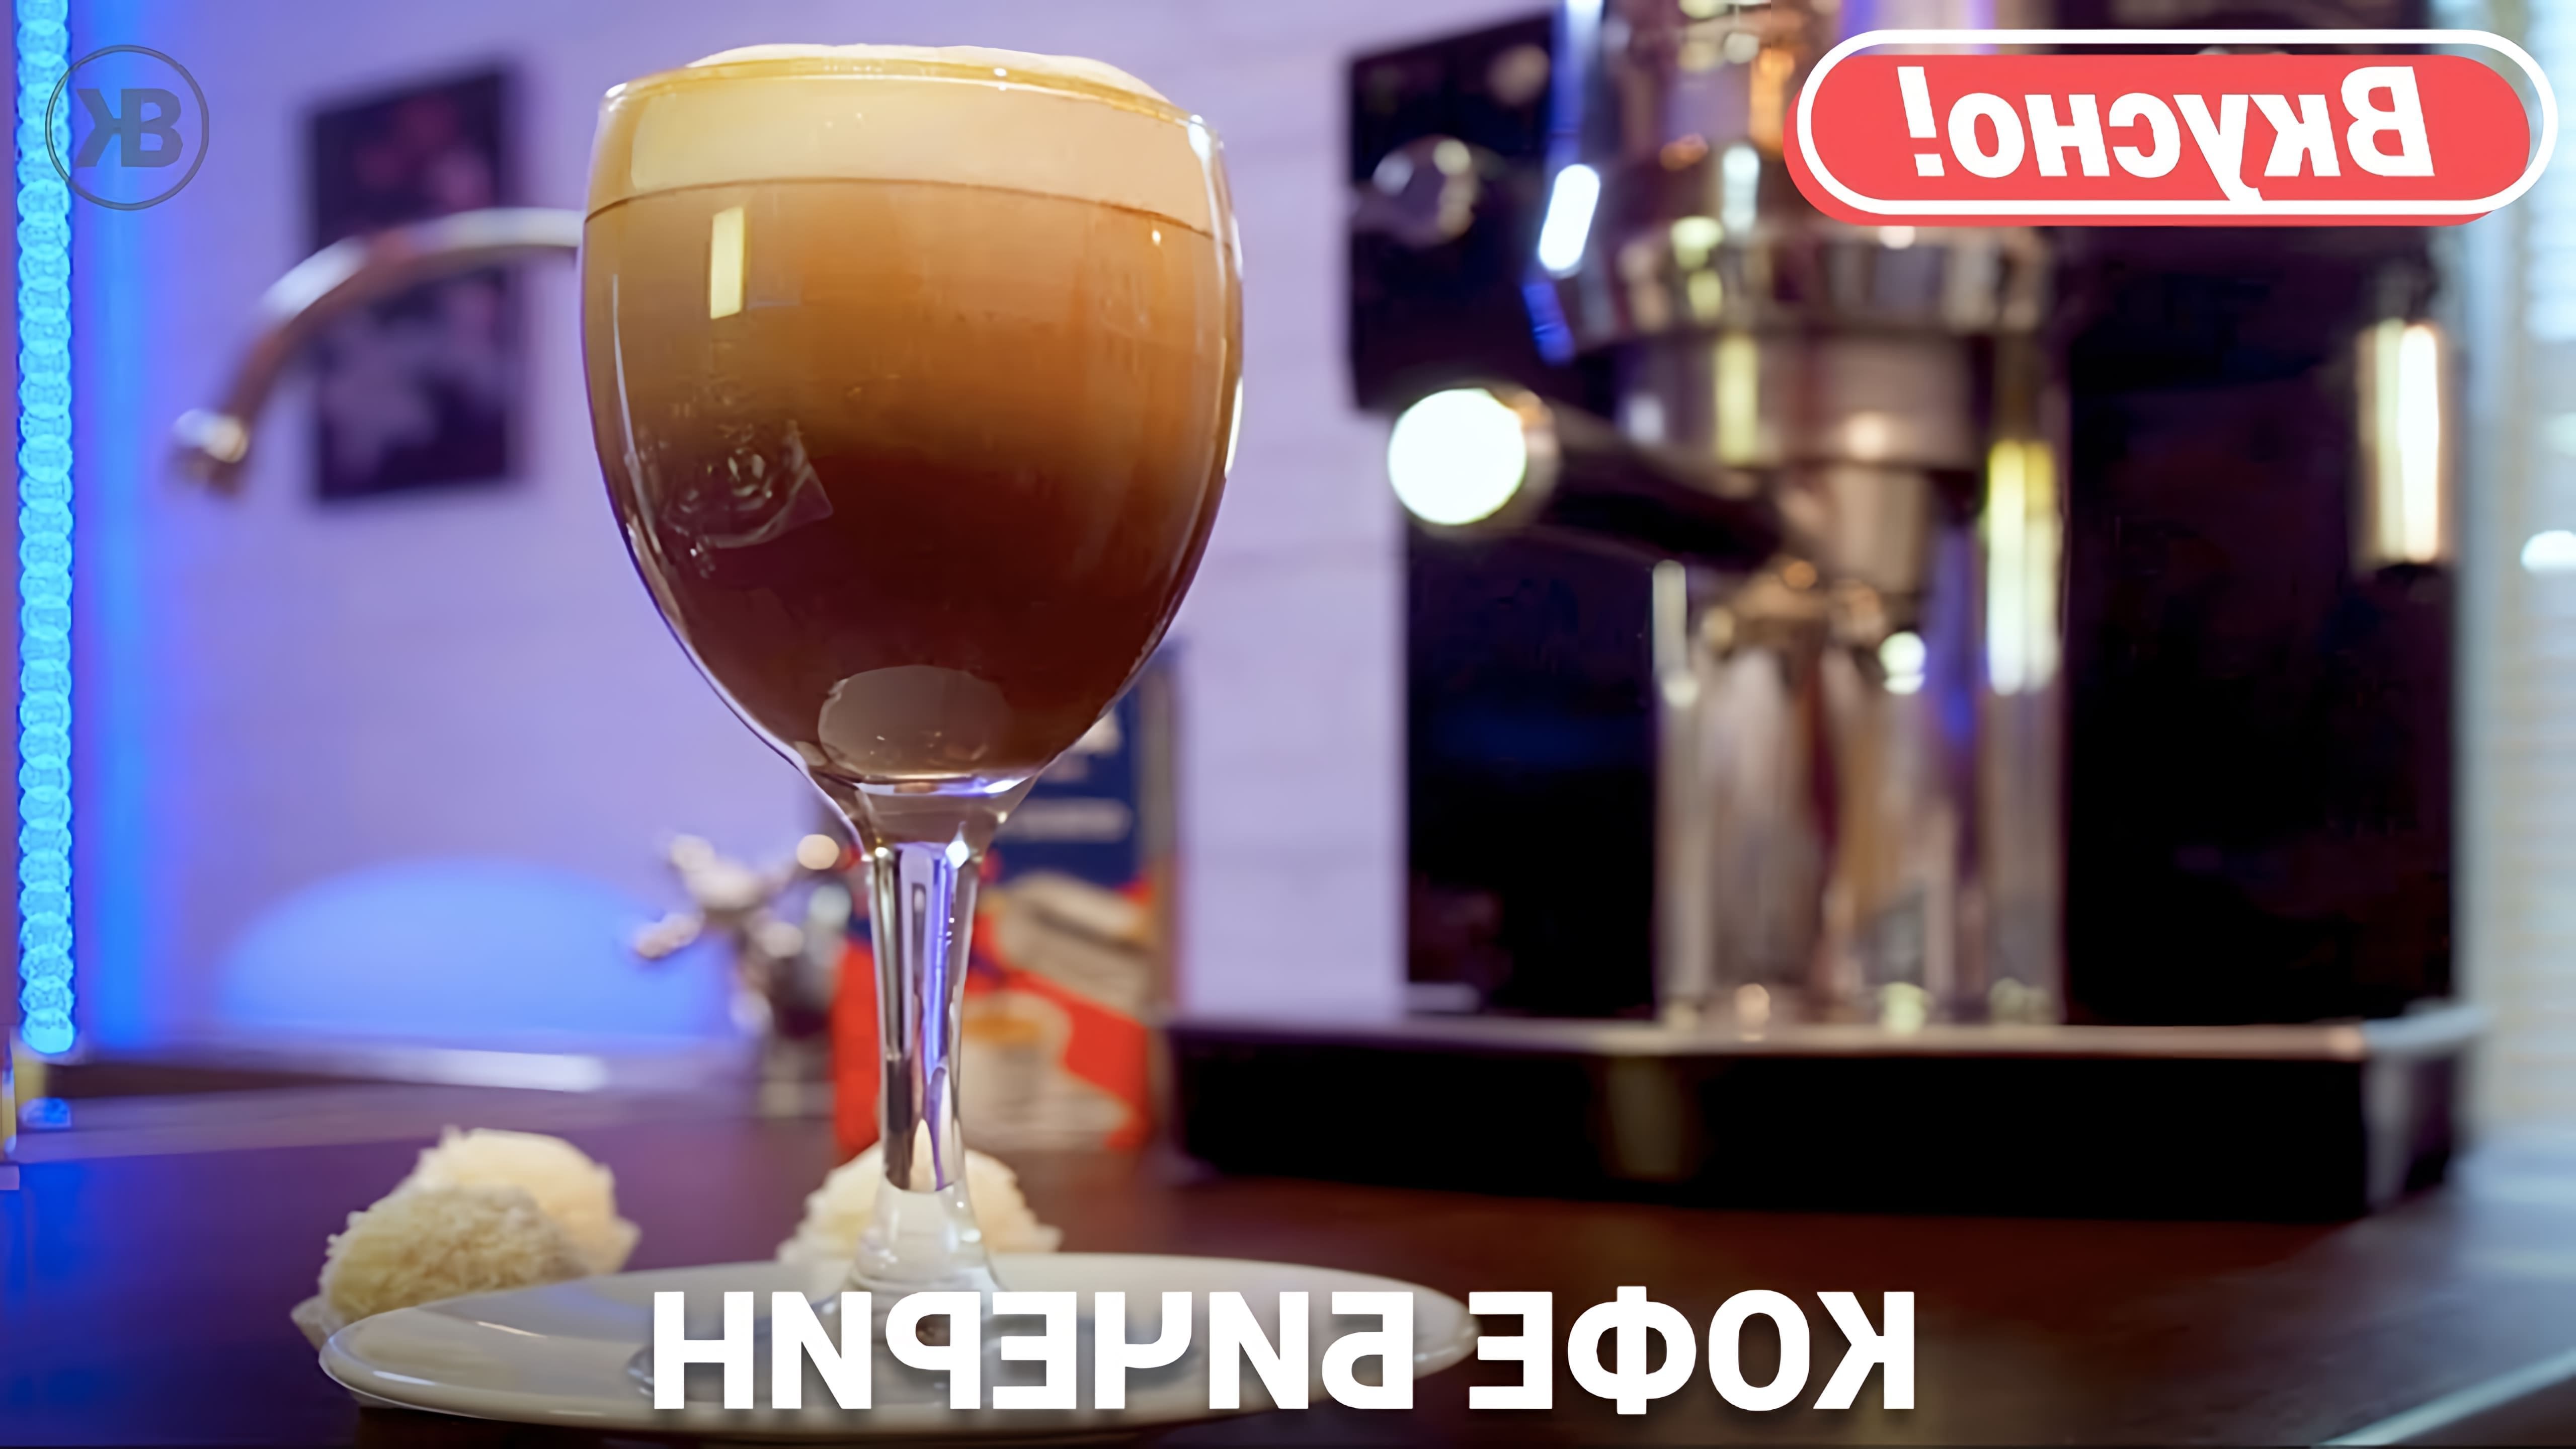 В этом видео демонстрируется процесс приготовления кофе бичерин, который был придуман в городе Курино Печерин в Италии